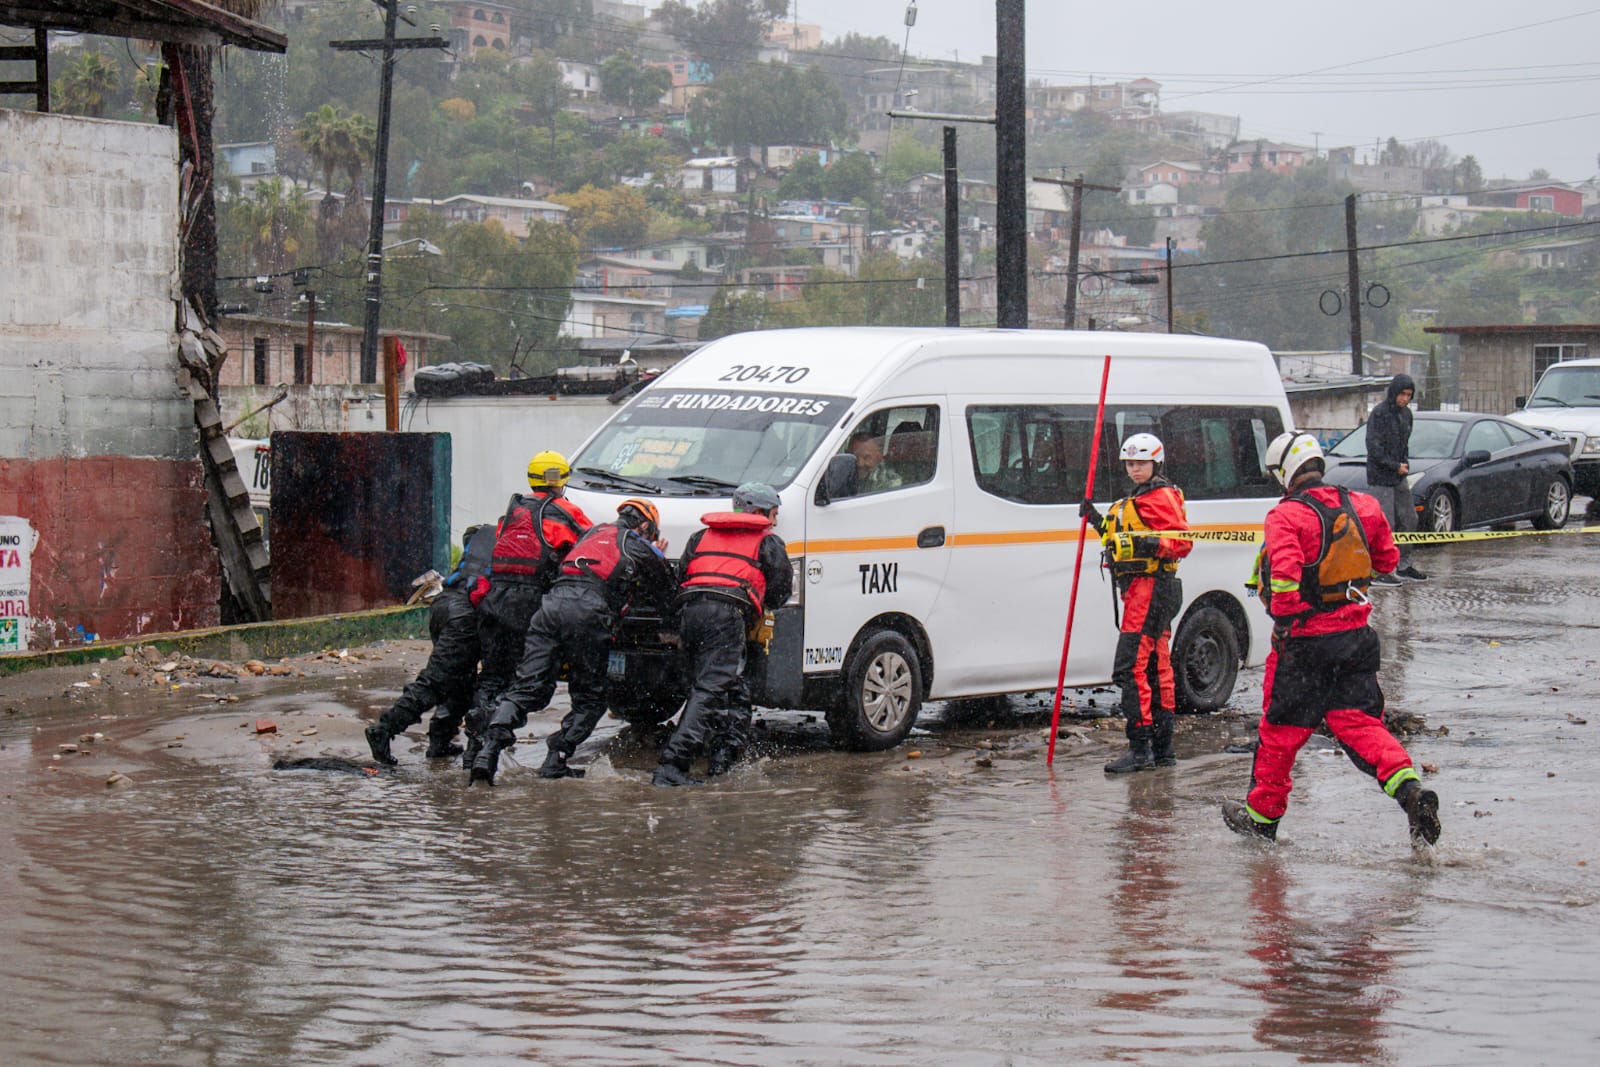 [VIDEO] Se queda varado un taxi en inundación por lluvias: Obrera